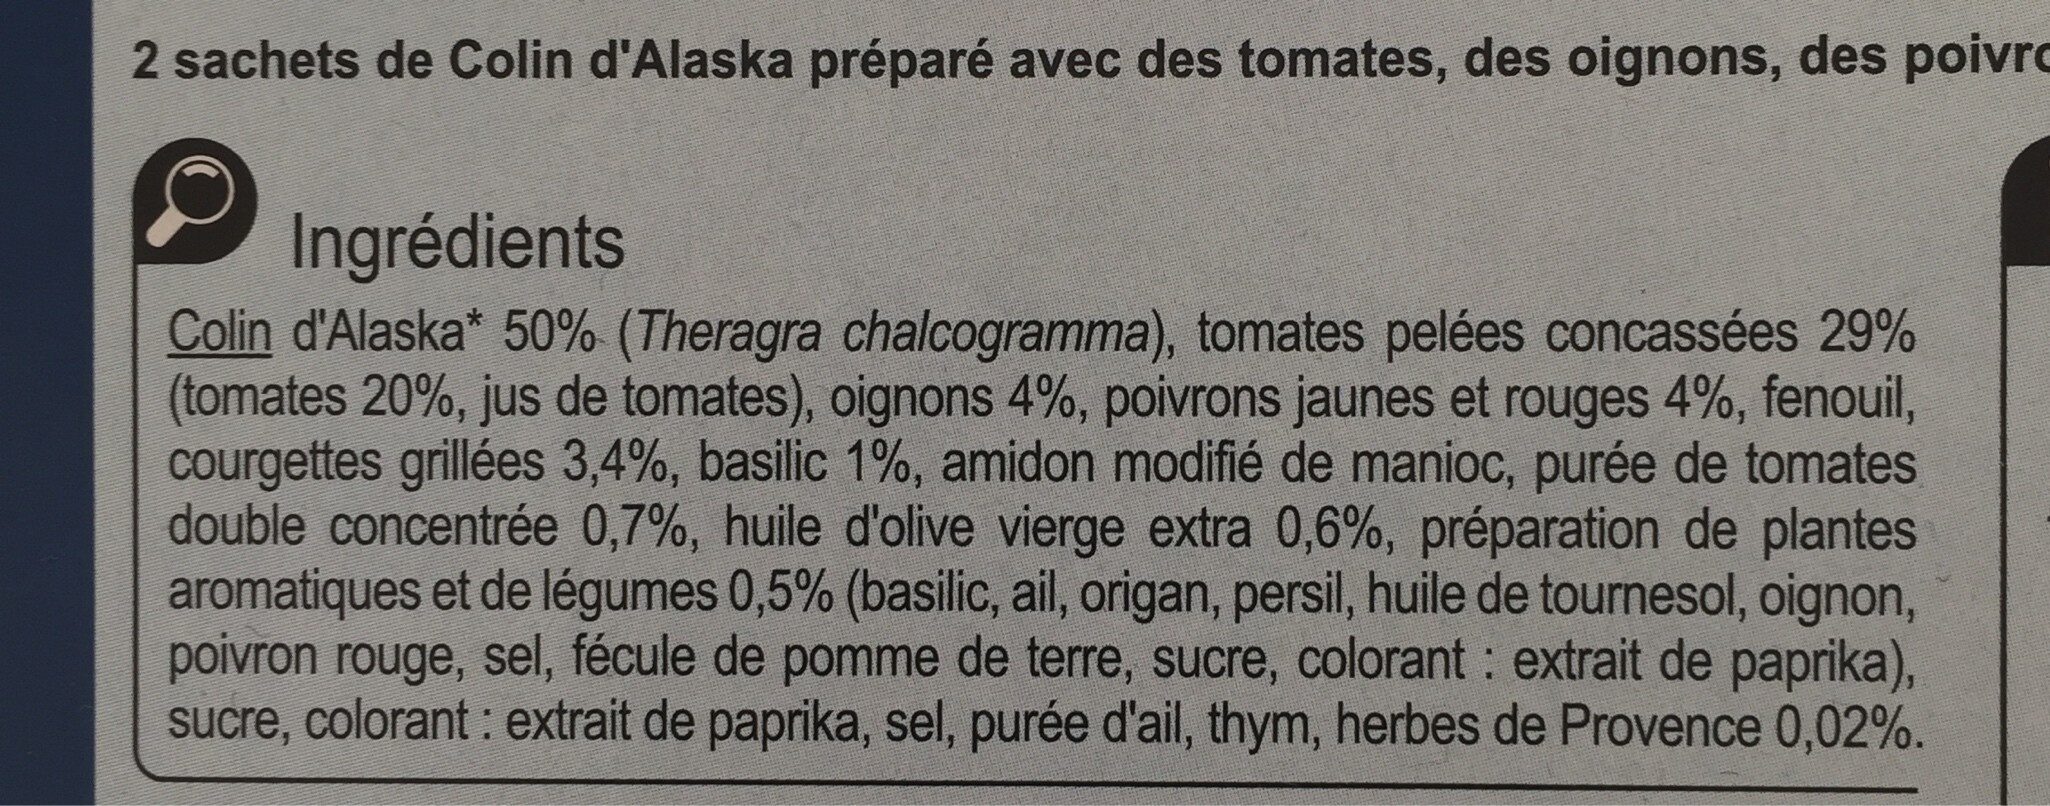 Colin d'Alaska sauce provençale - Ingrédients